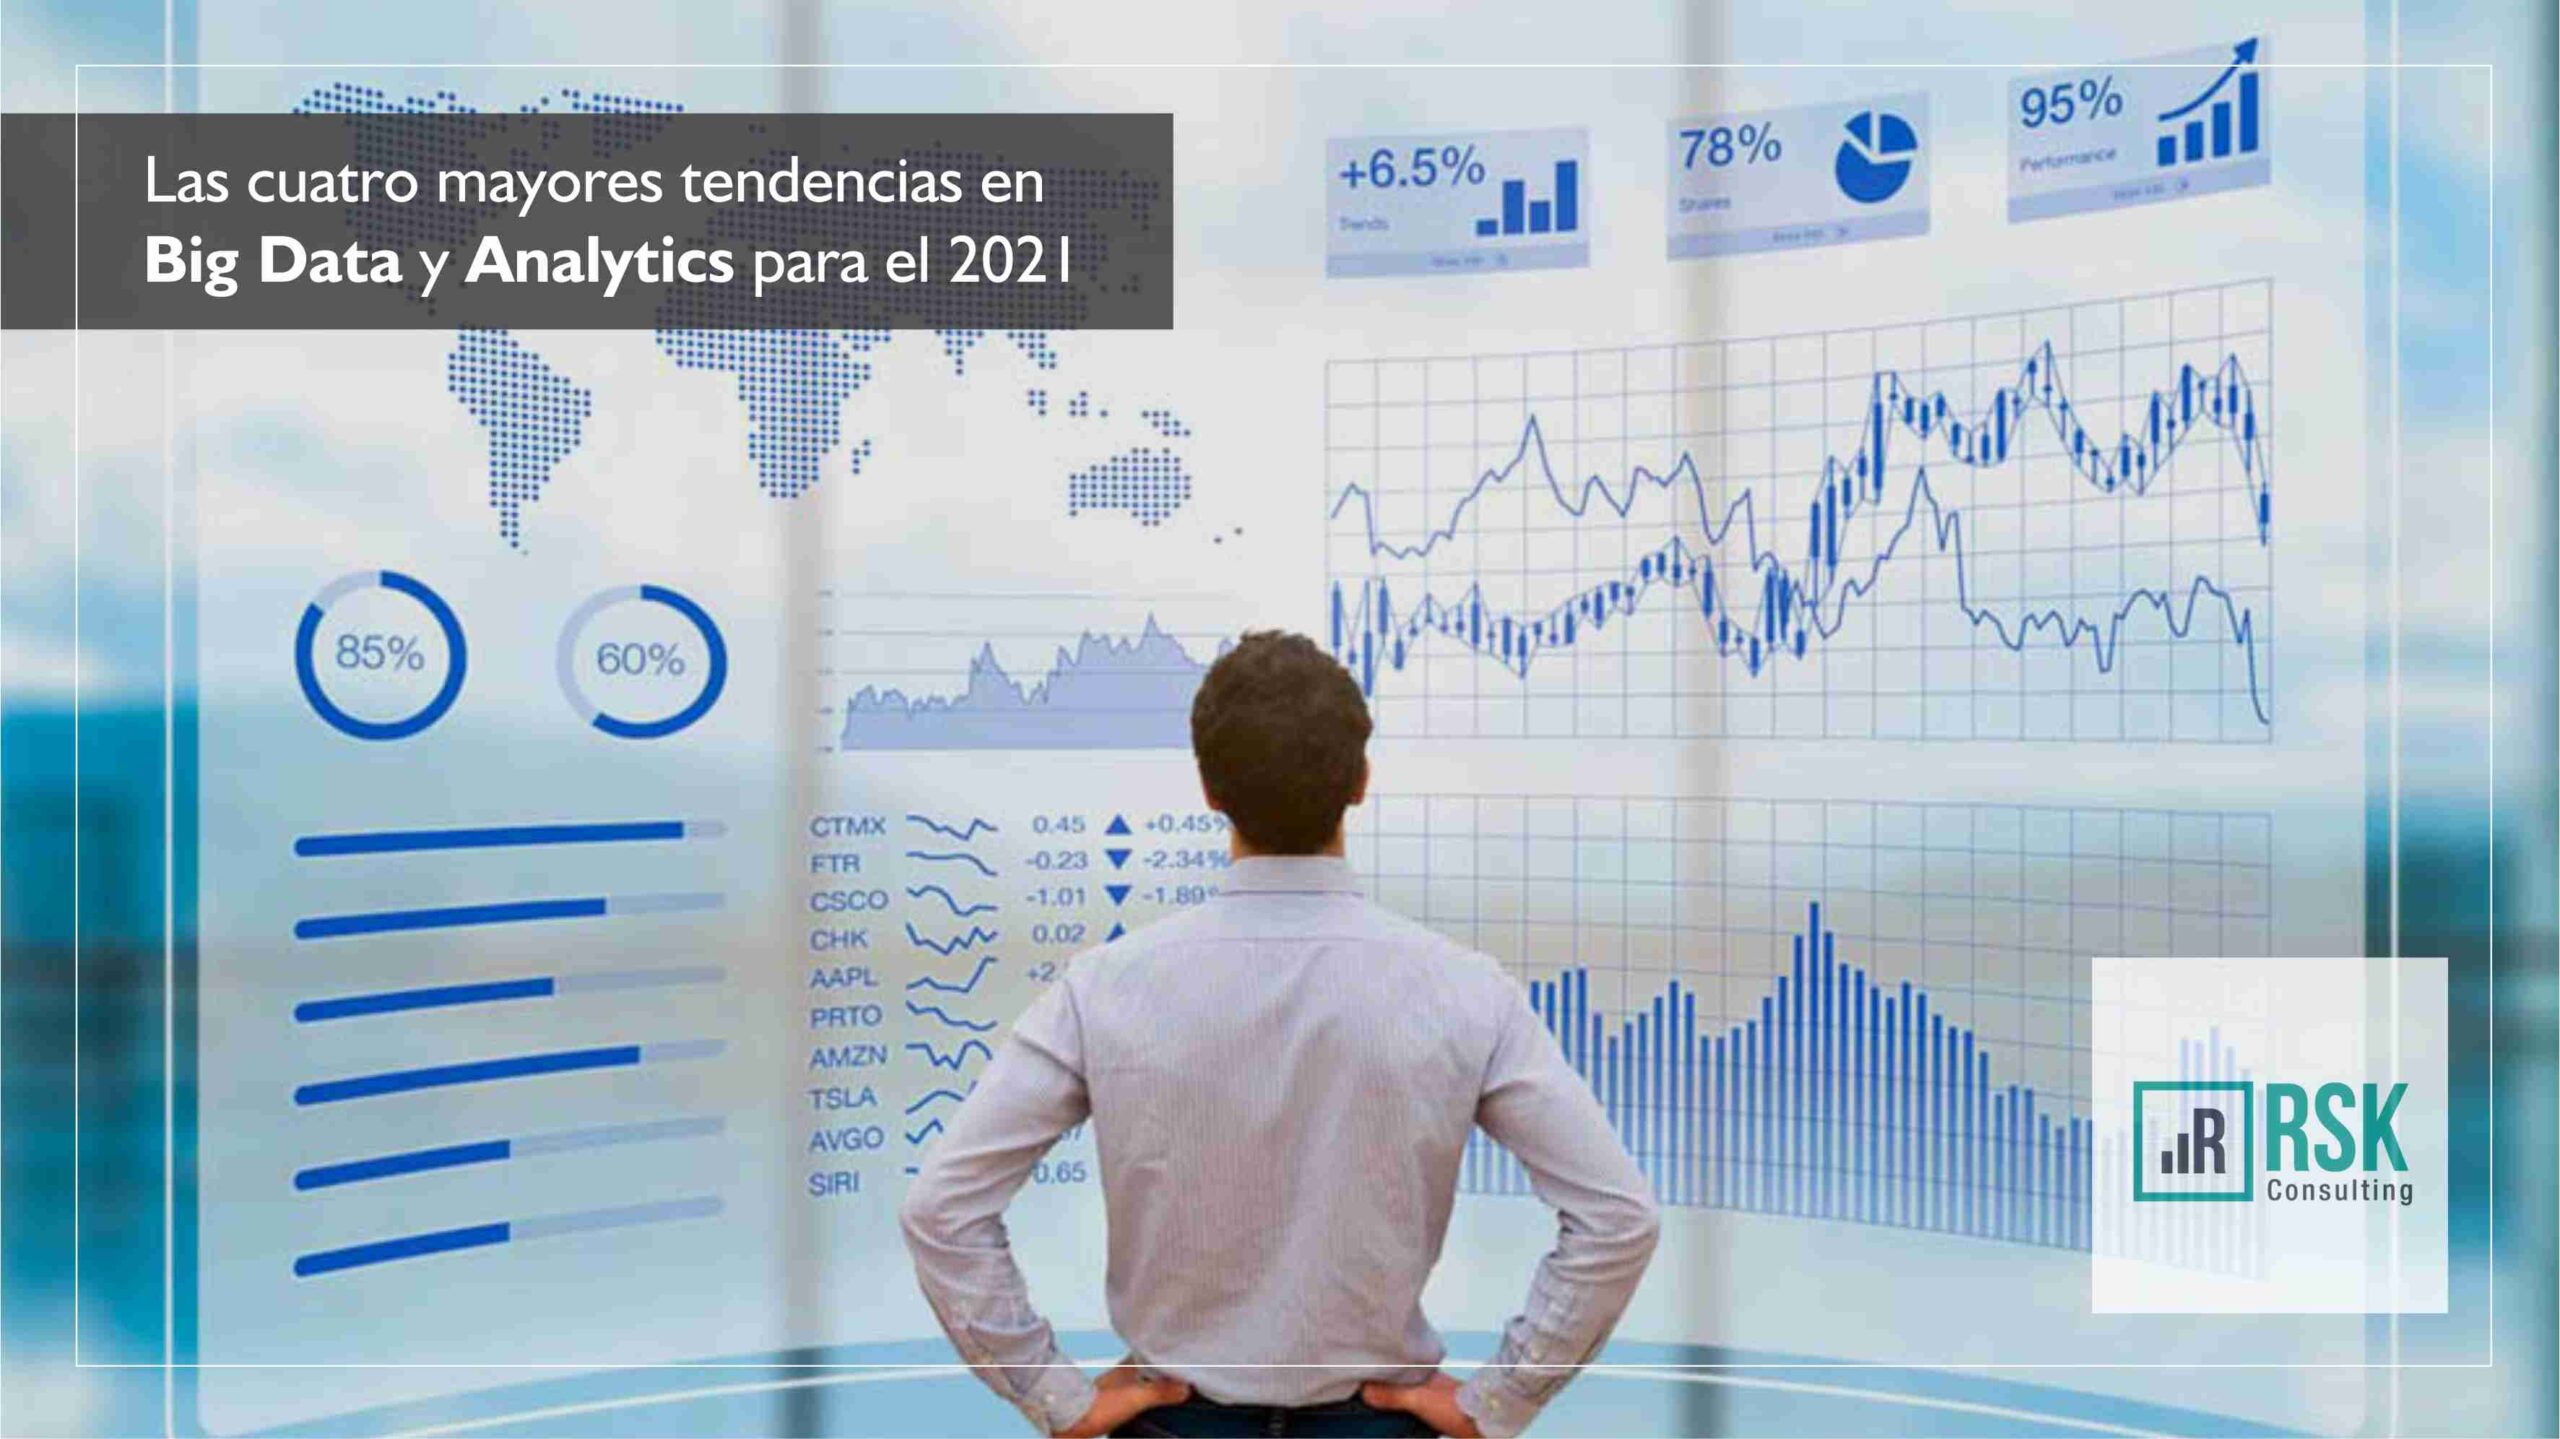 Las 4 mayores tendencias en Big Data y Analytics para el 2021